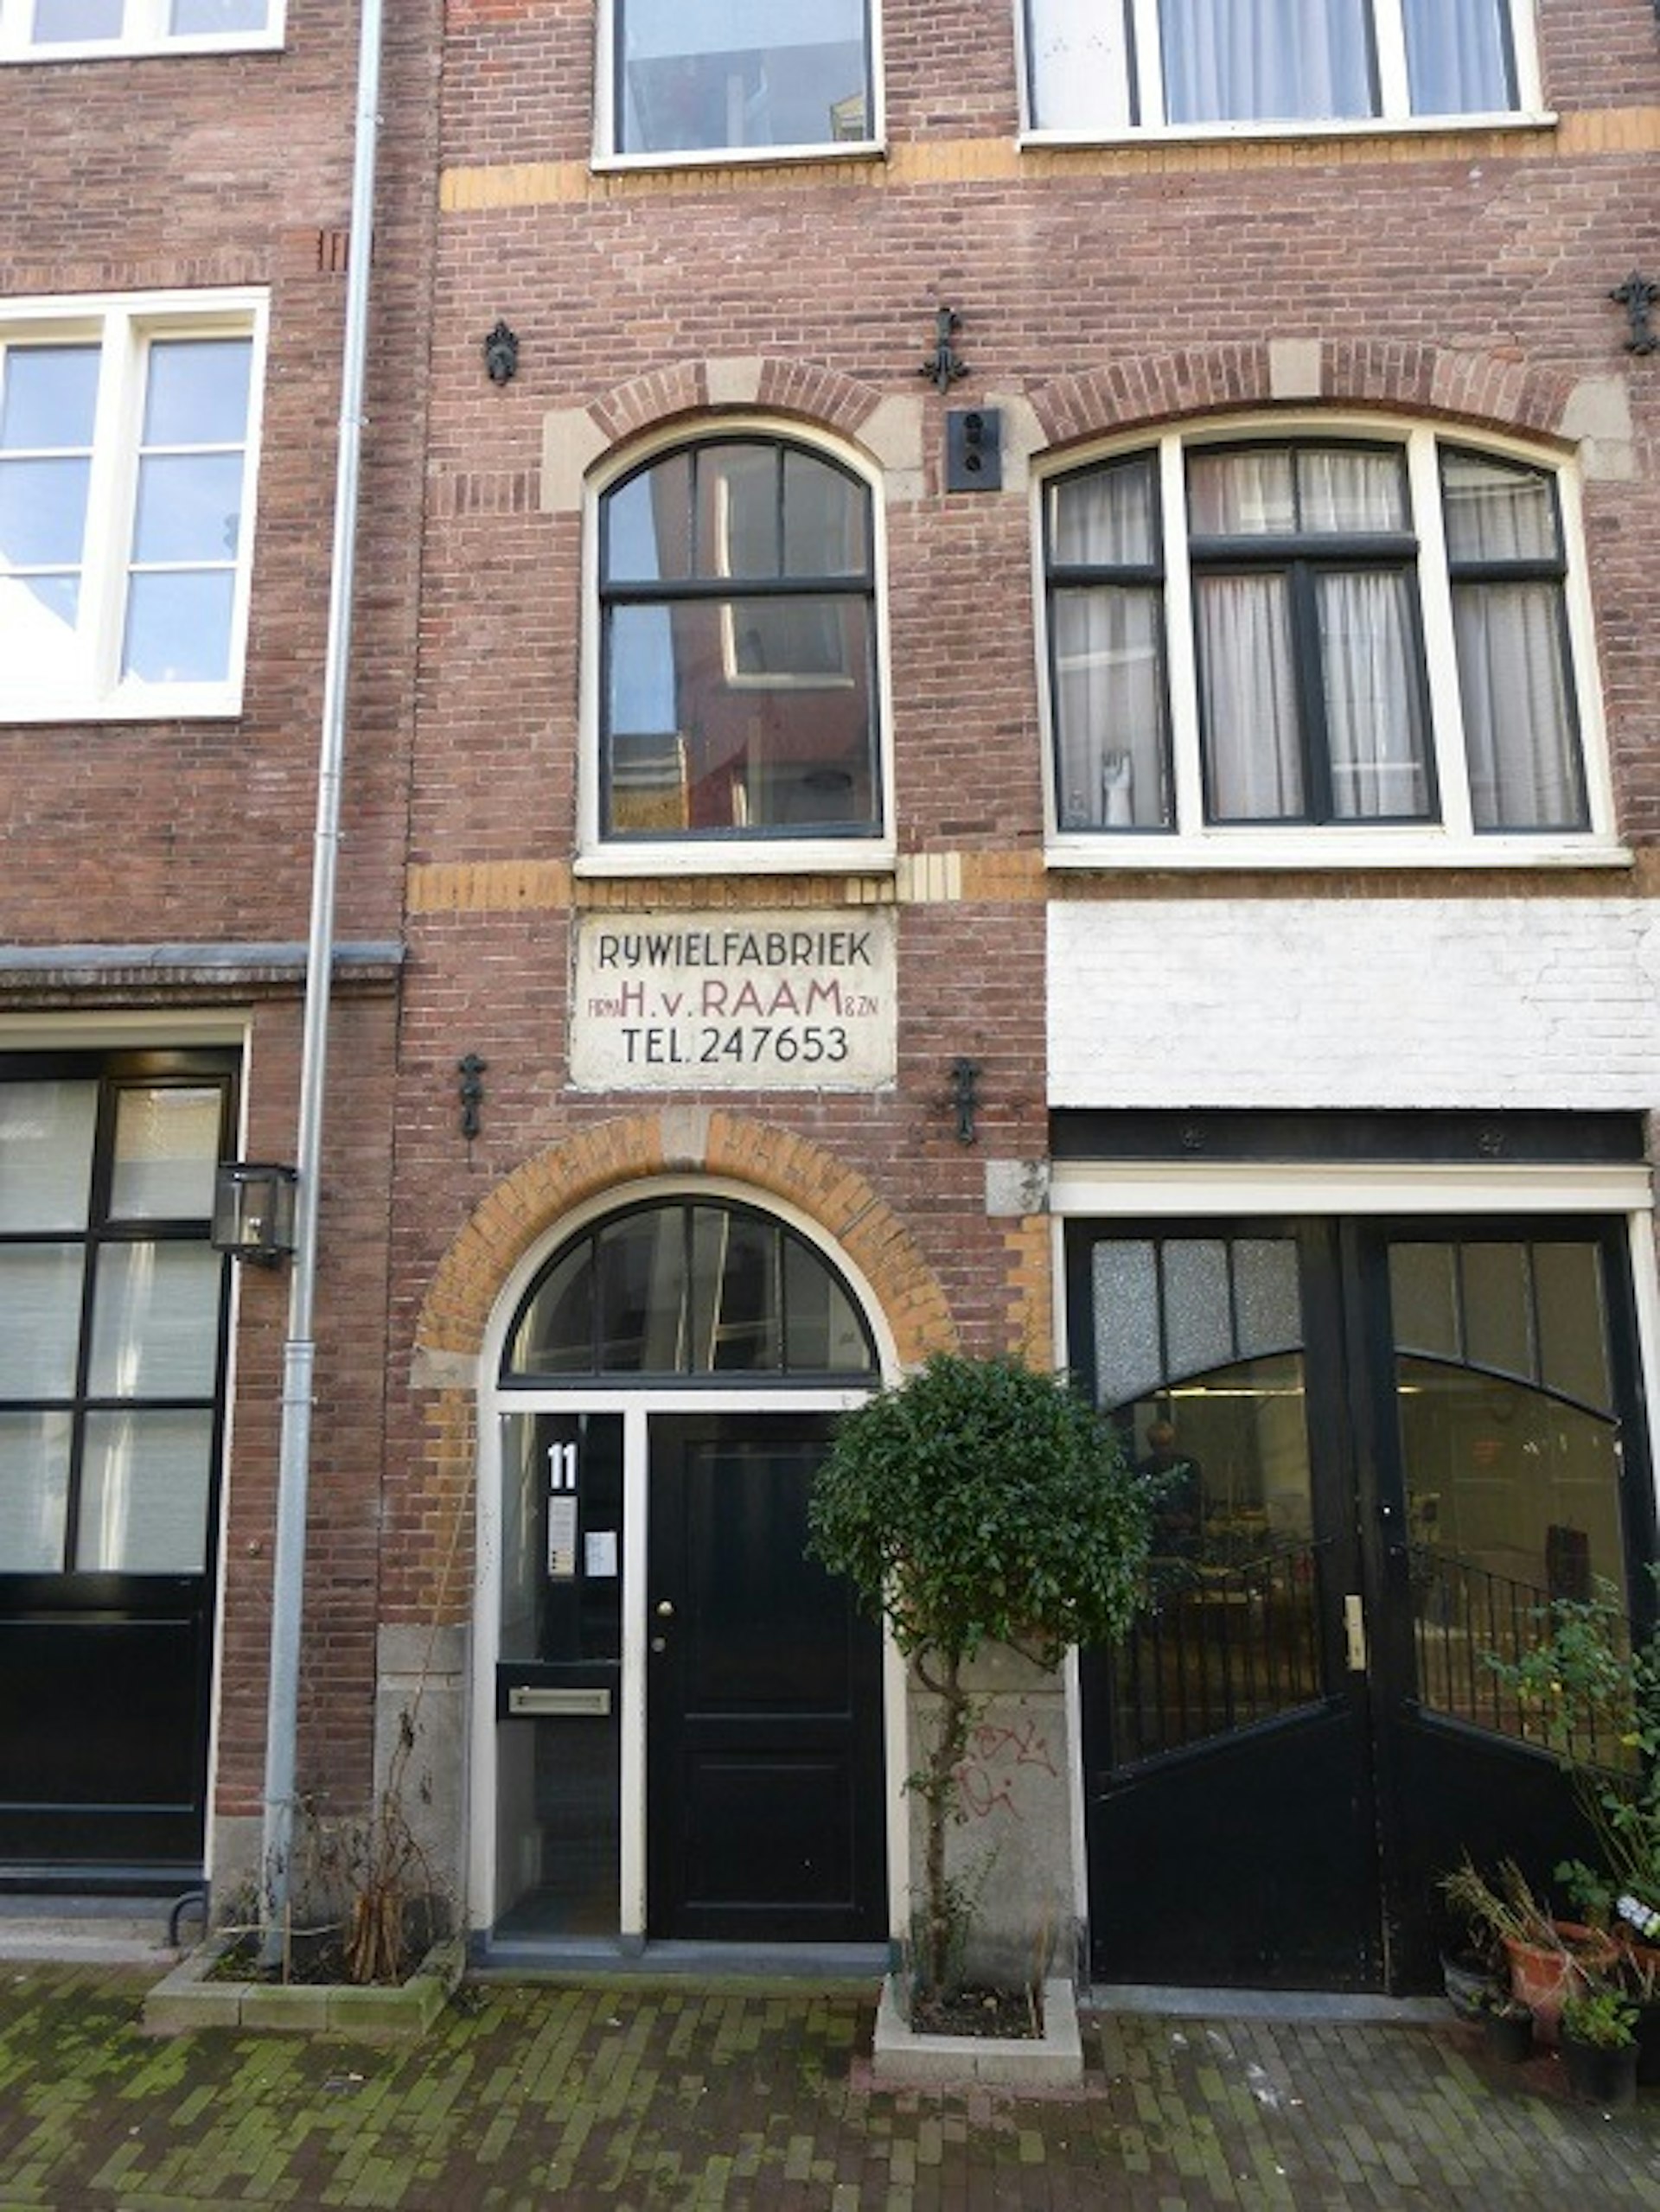 Van Raam Fabrik Amsterdam